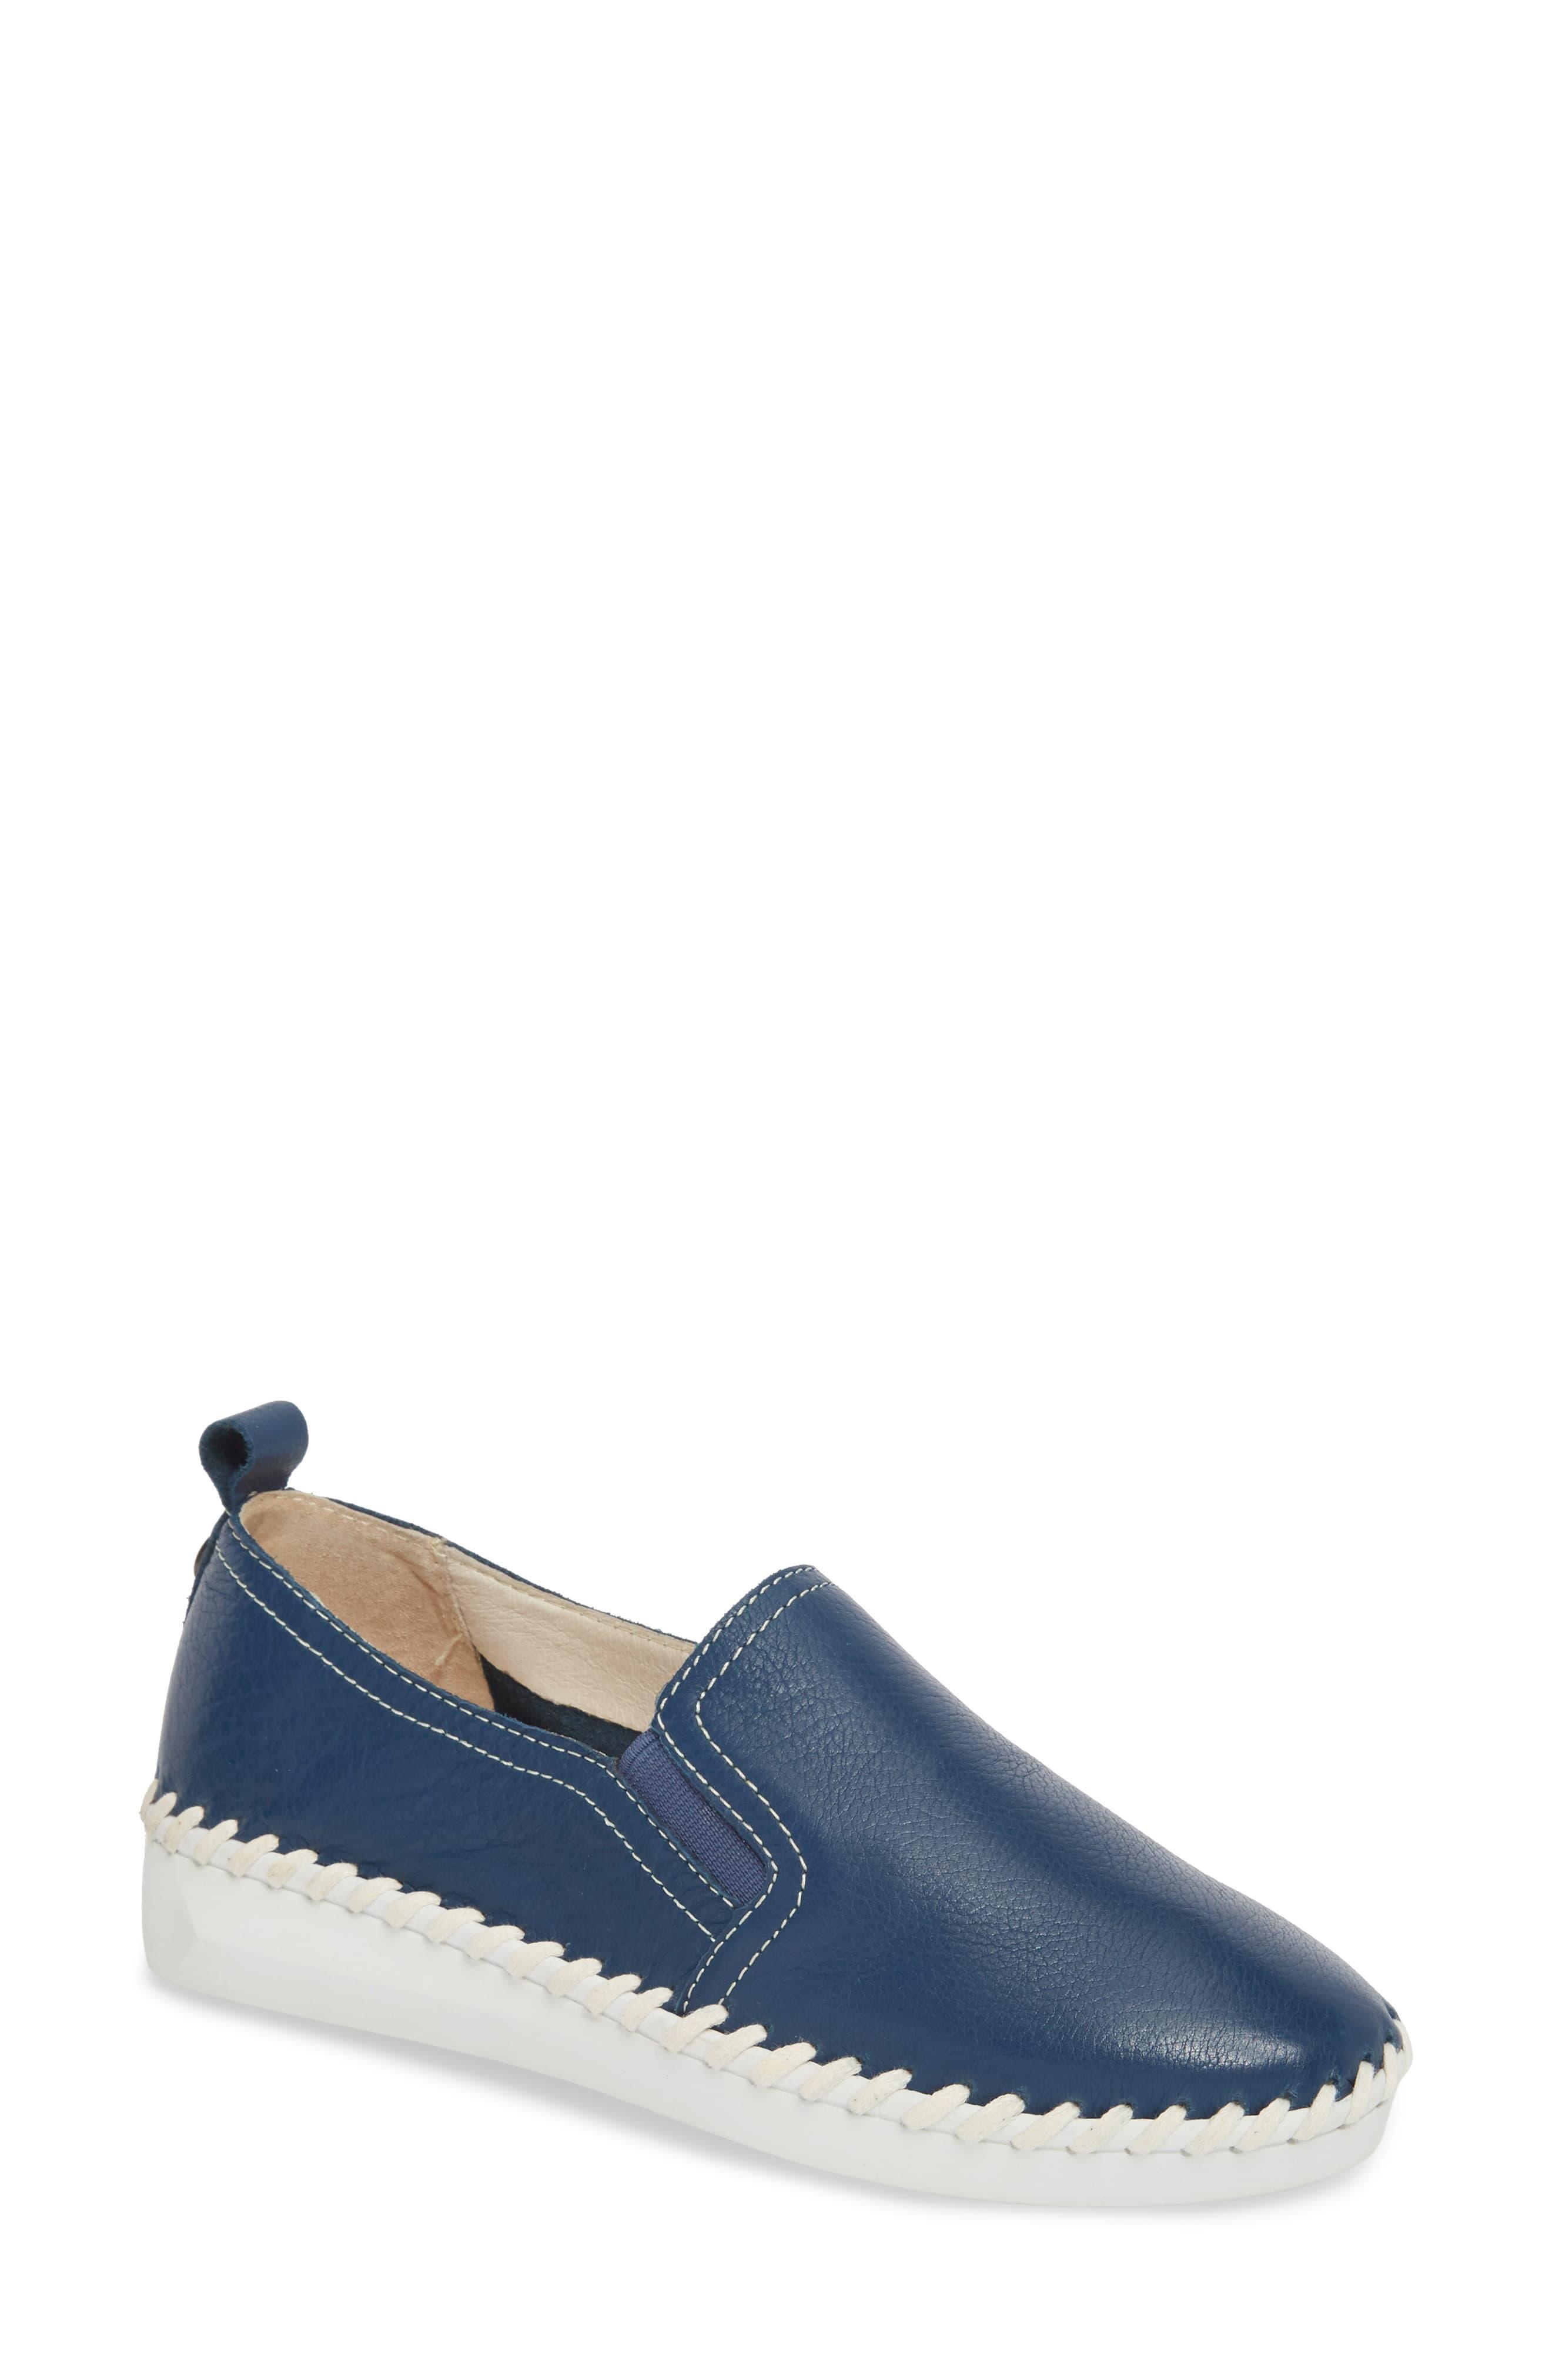 Bernie Mev Tw85 Slip-on Sneaker in Navy Leather (Blue) - Lyst